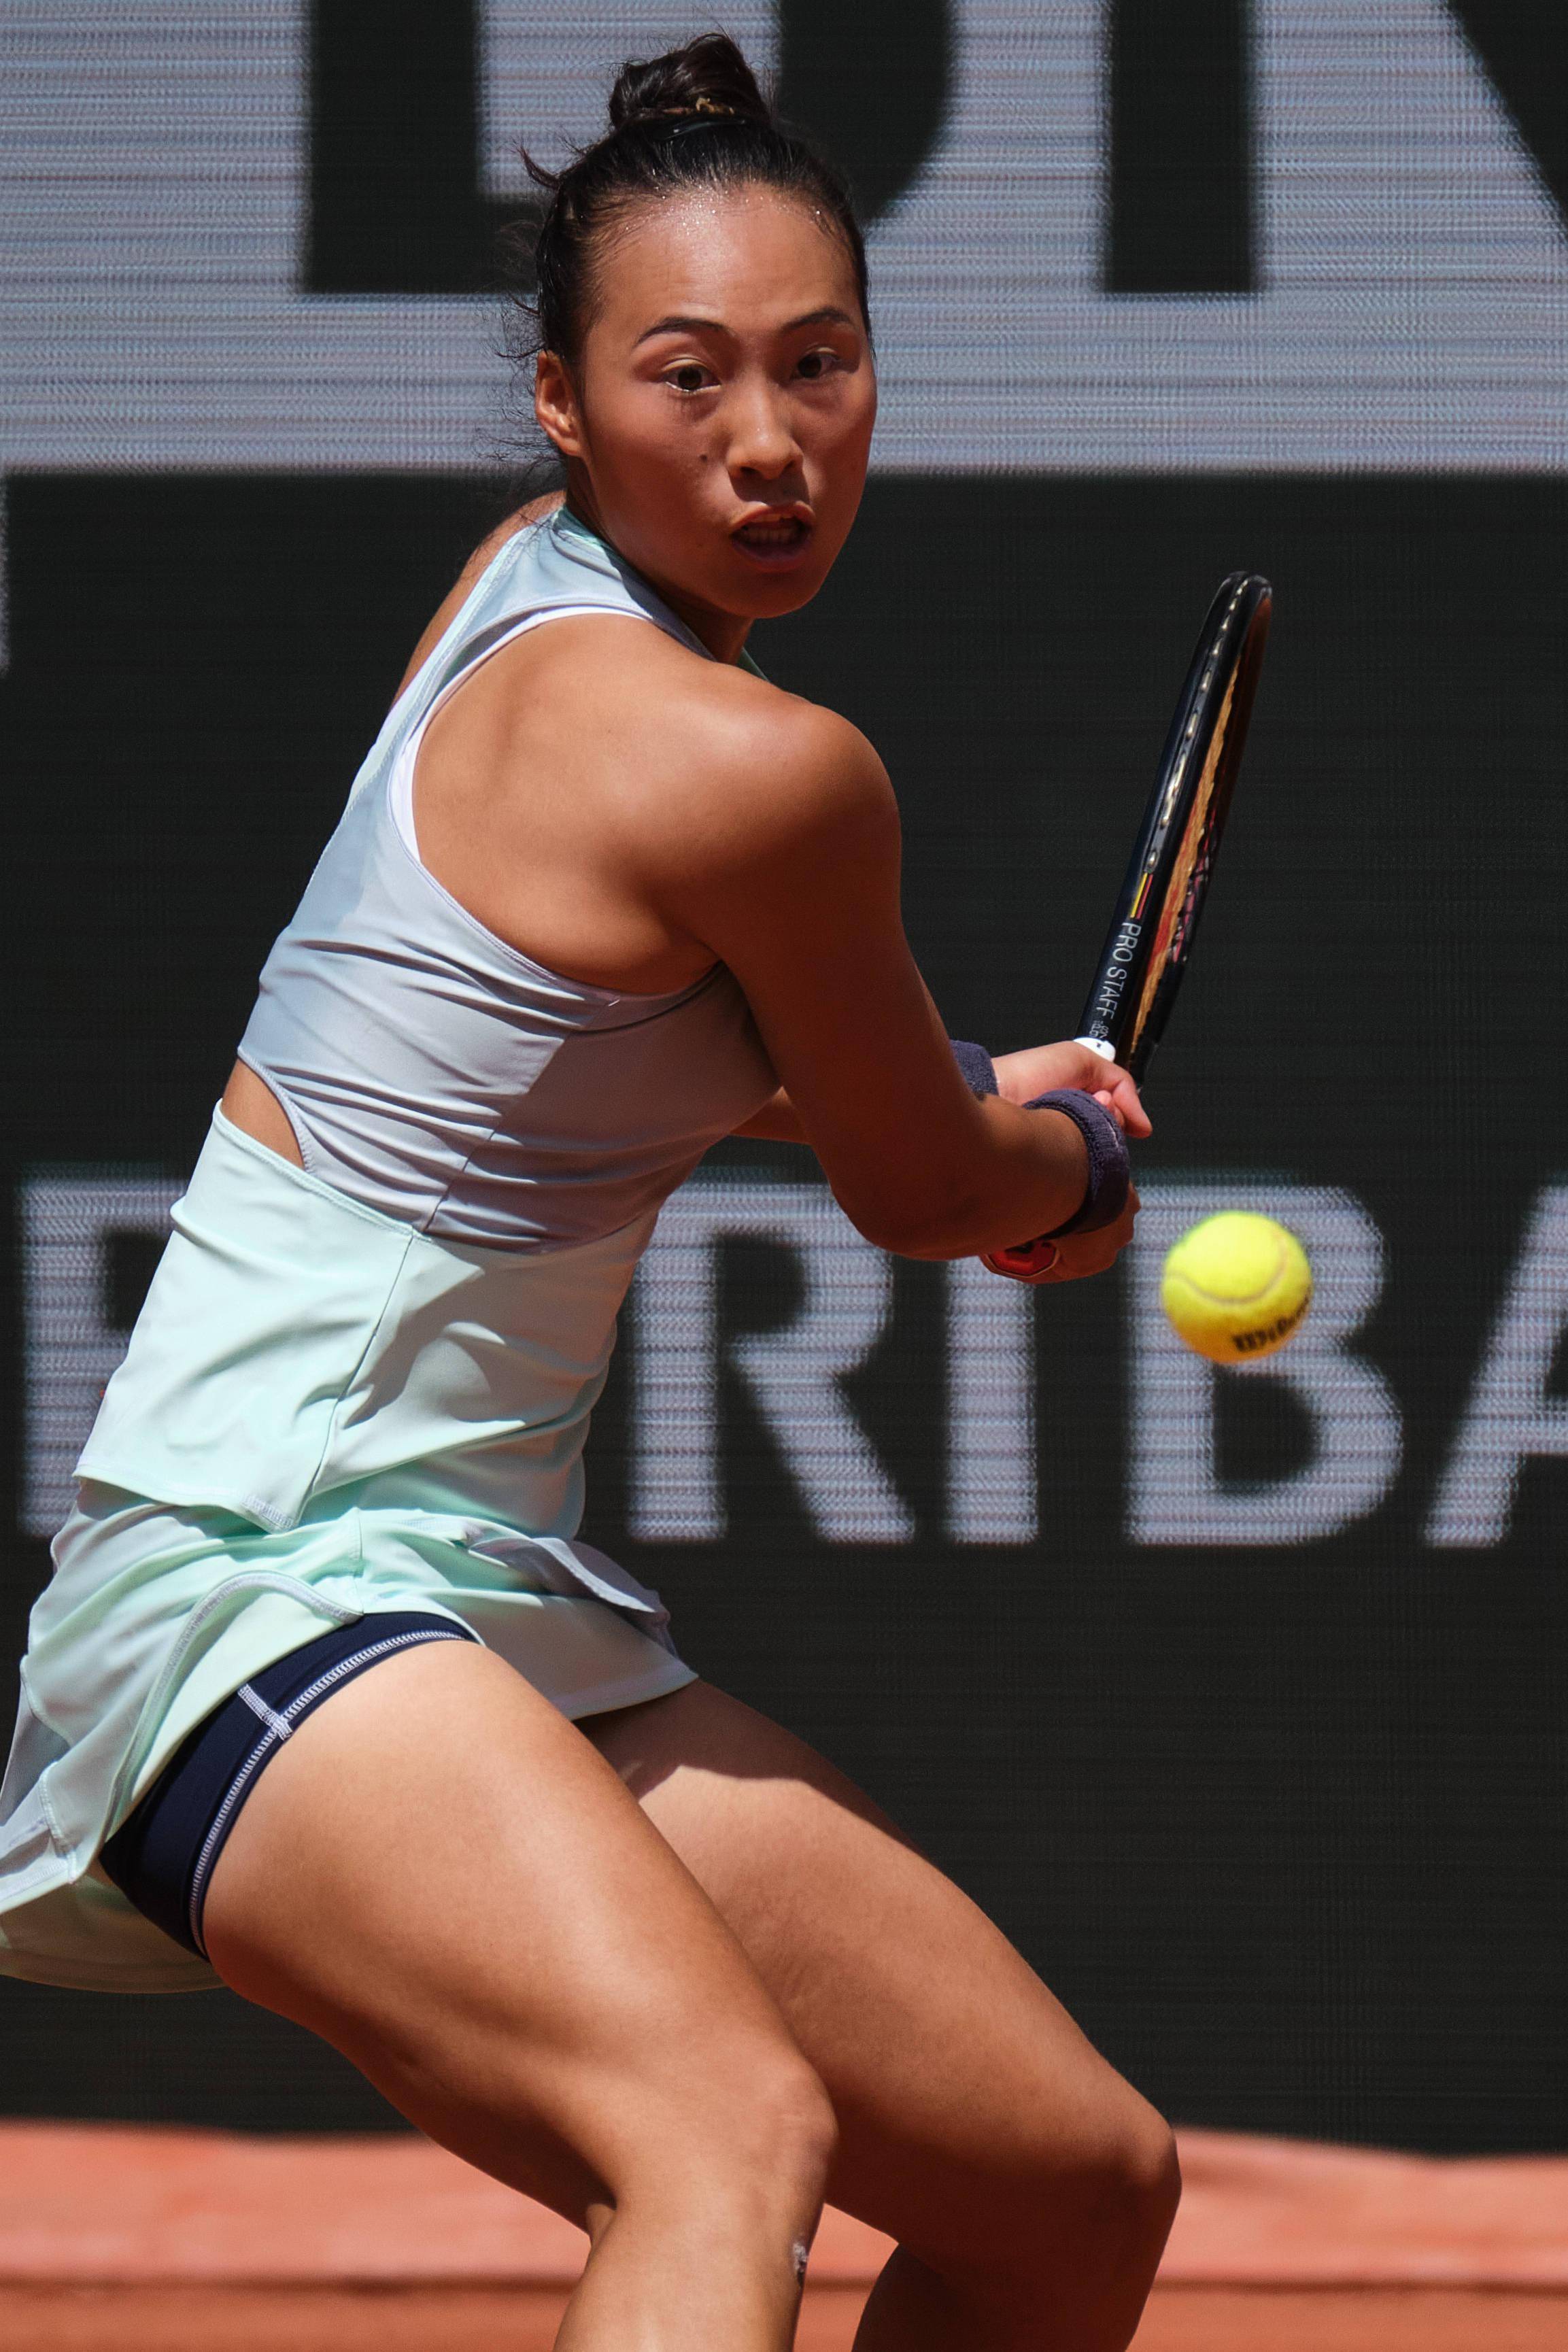 网球公开赛女子单打第三轮比赛中,法国选手科内中途因伤退赛,中国选手